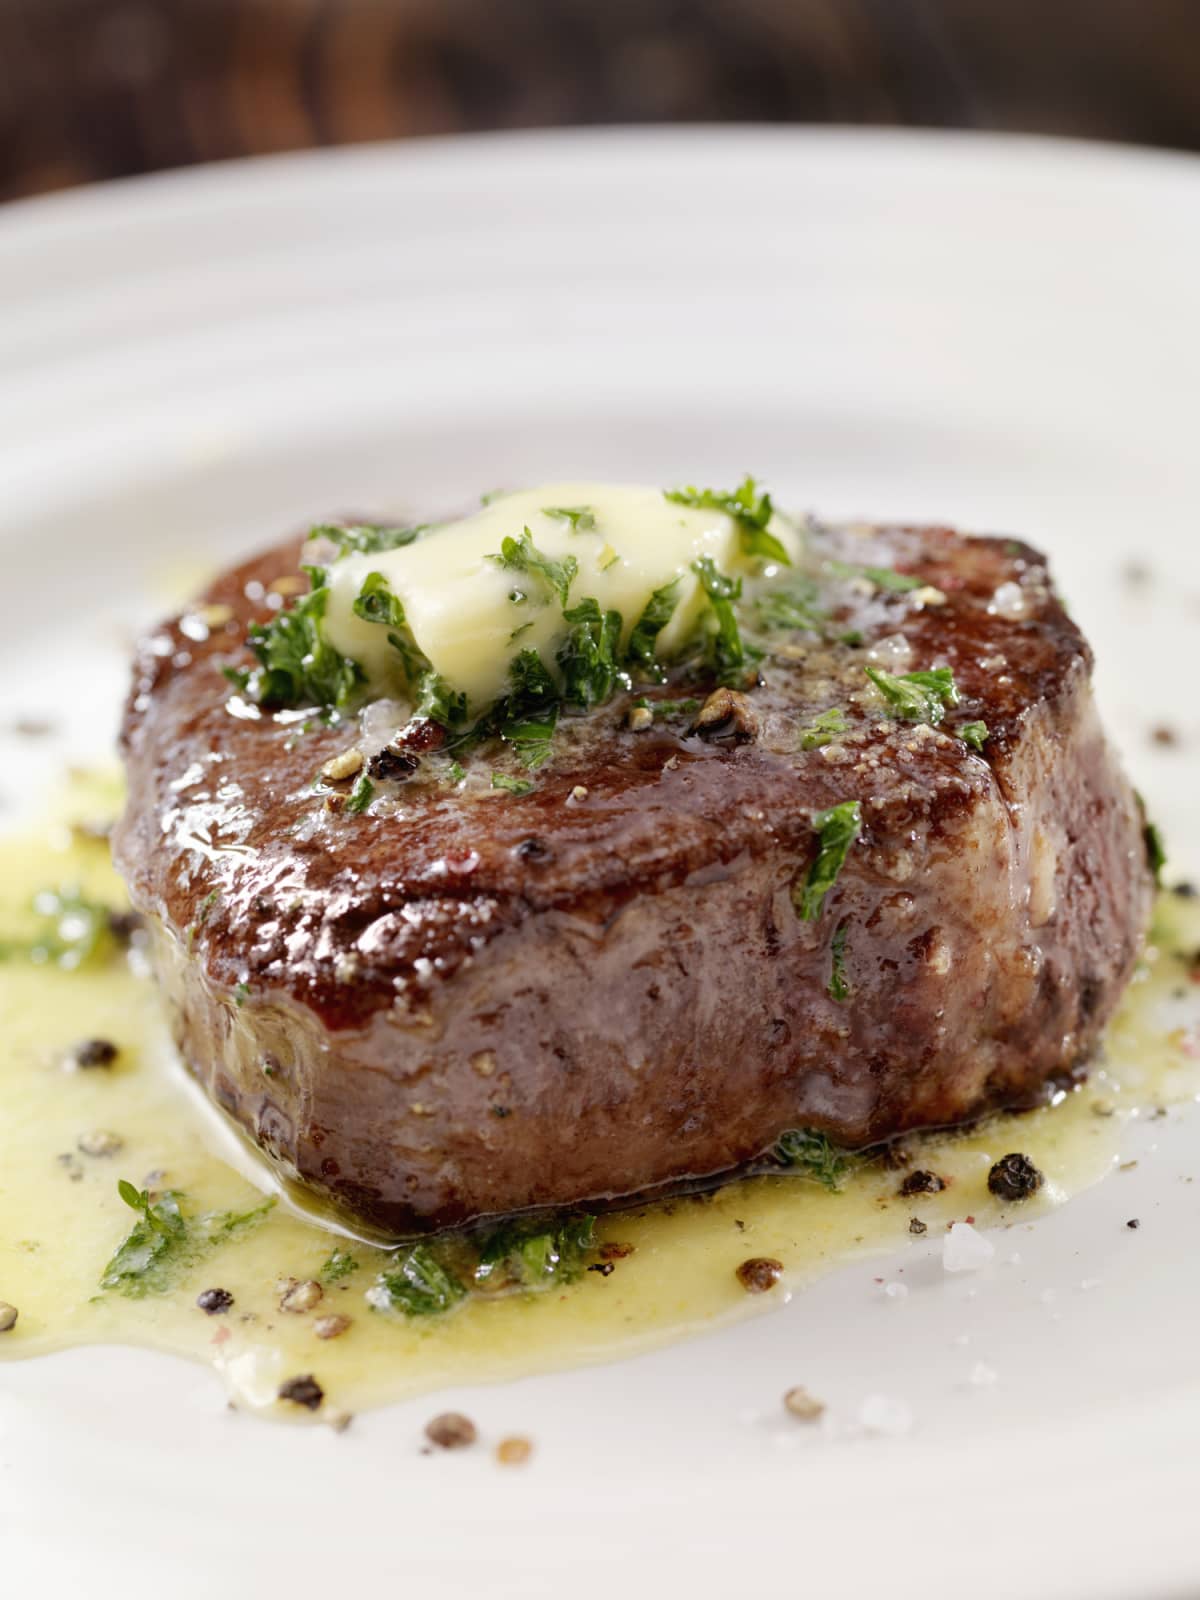 Medium rare filet mignon steak with herb garlic butter